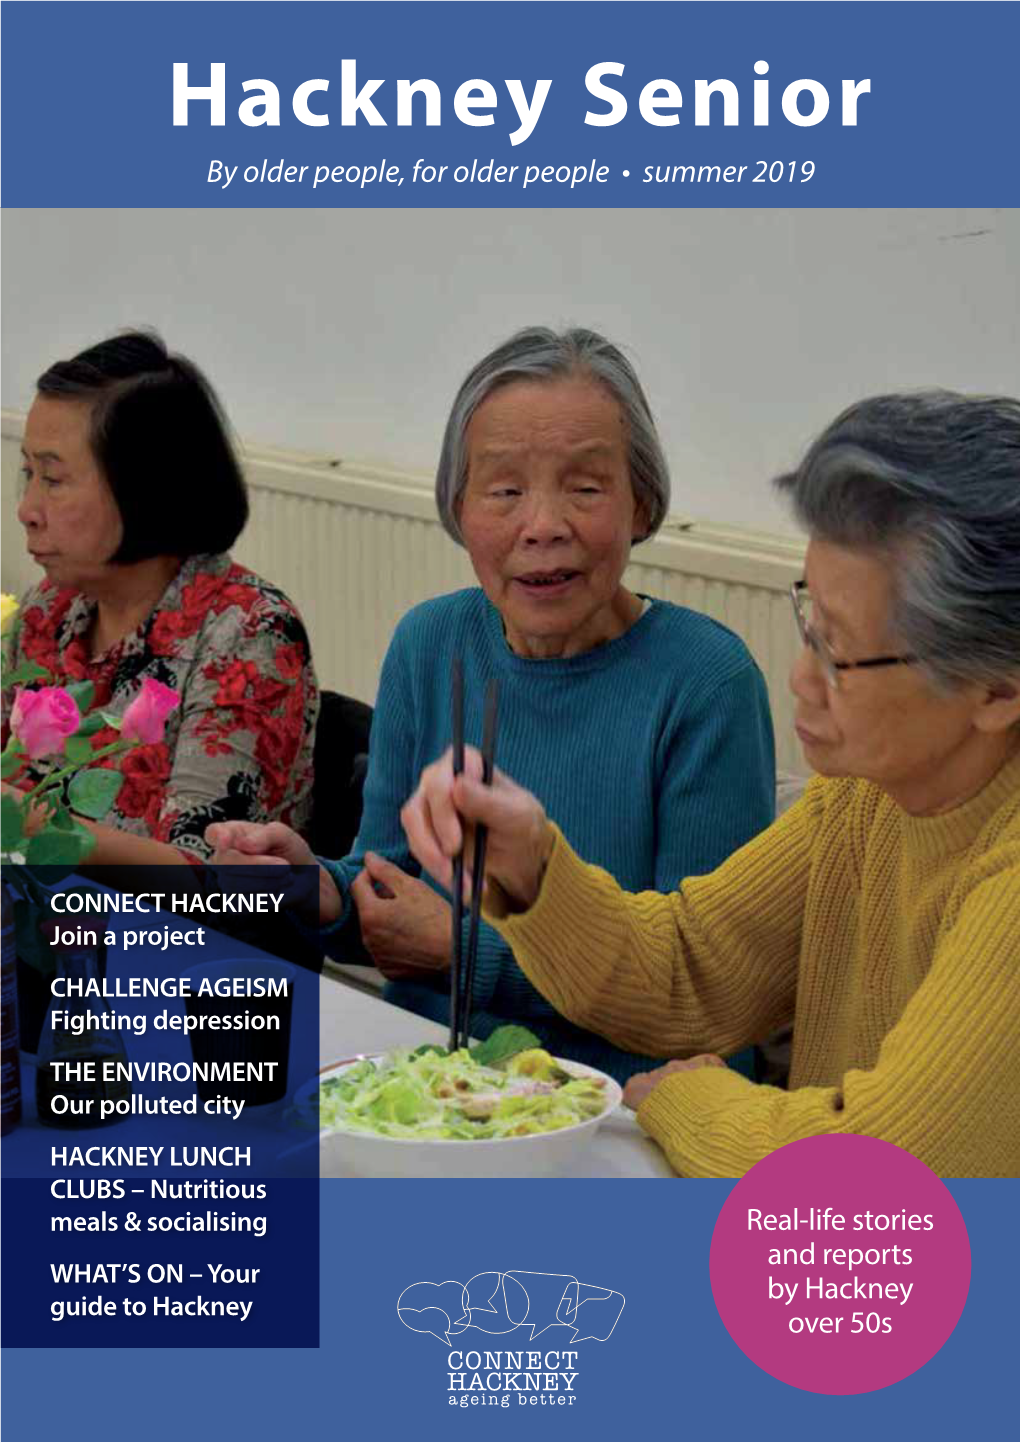 Hackney Senior by Older People, for Older People • Summer 2019